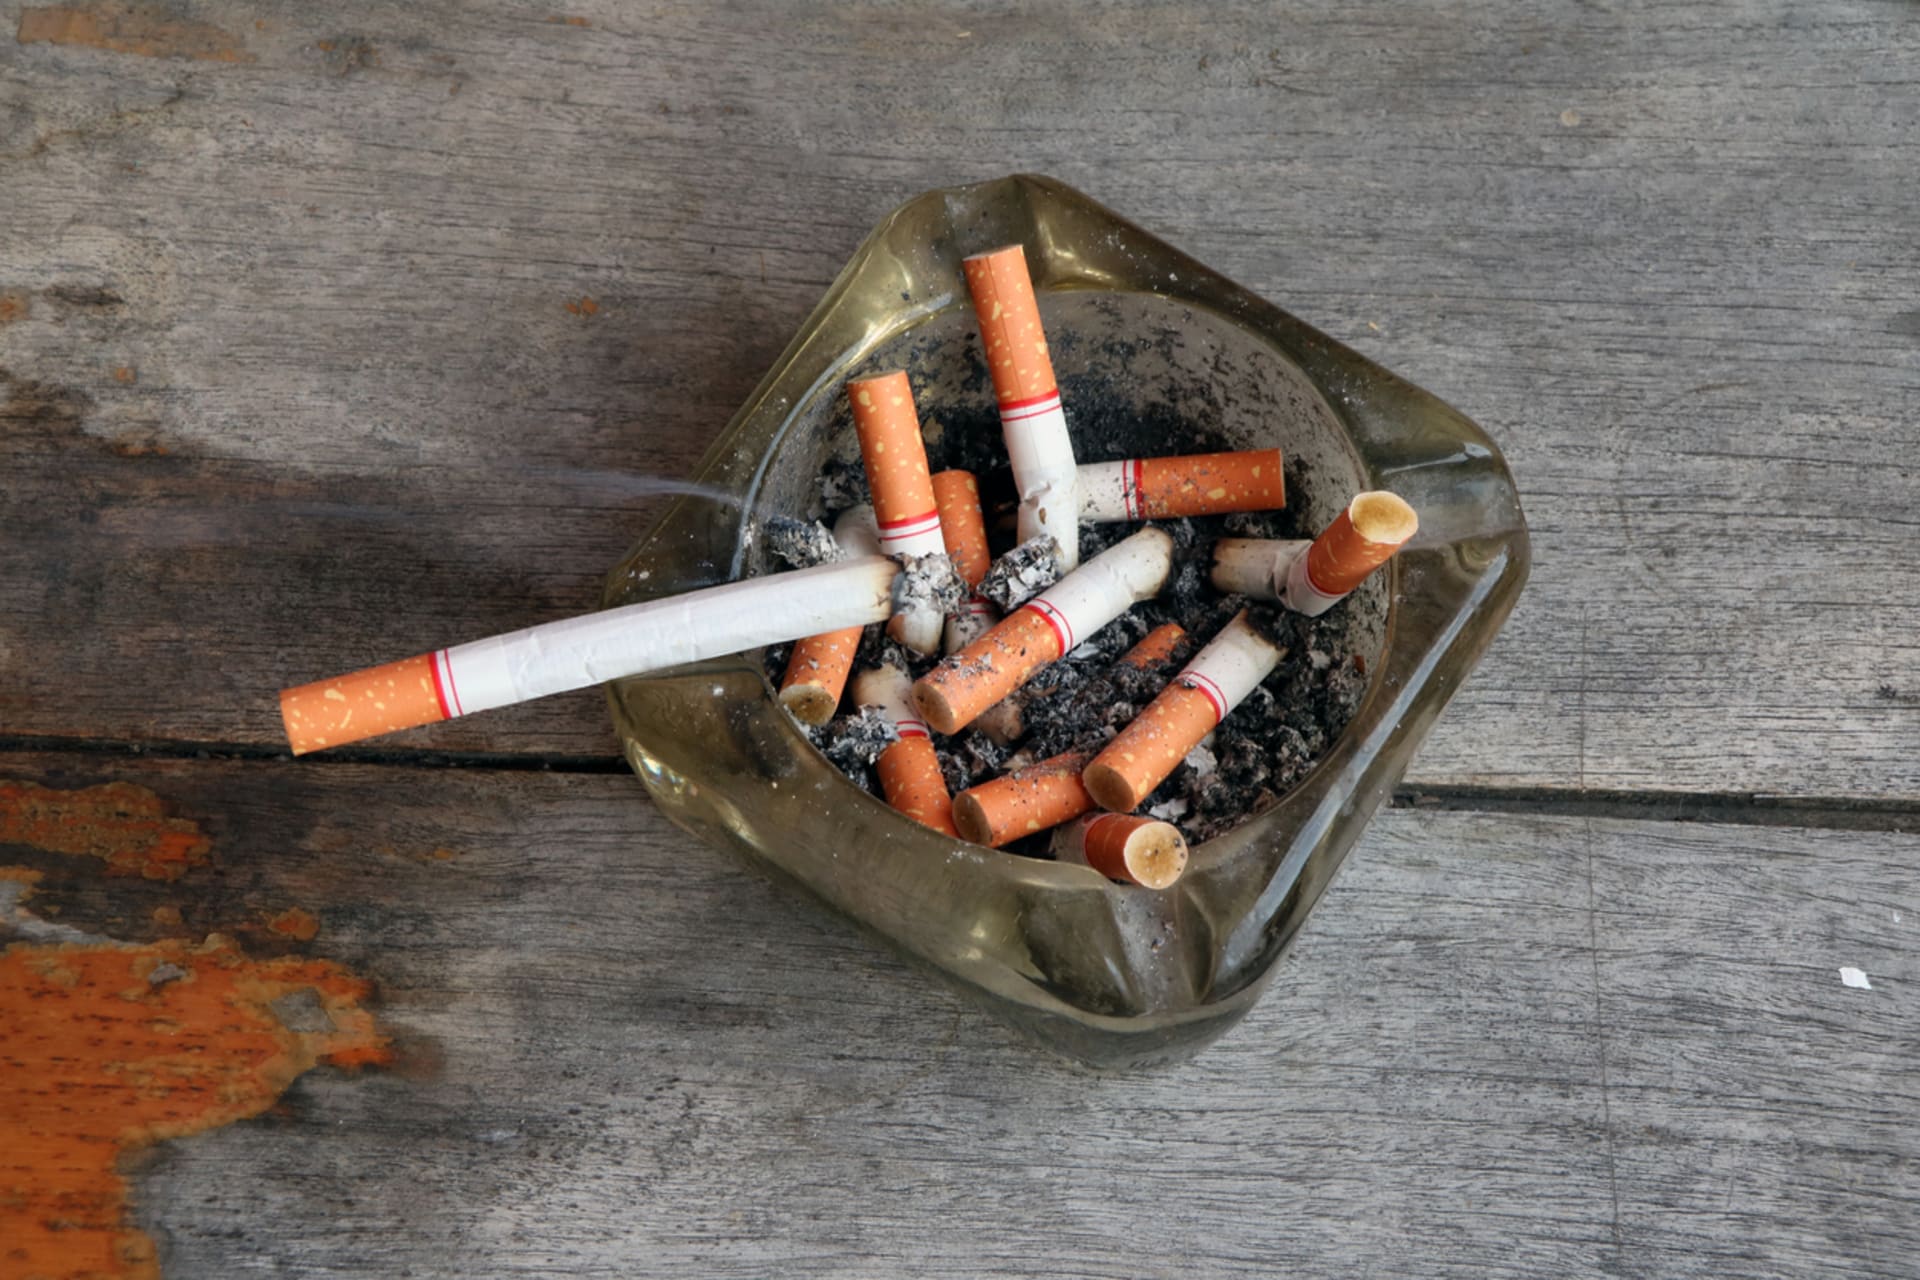 Pozor na cigarety a popelníky, na dřevěném nábytku často zanechávají stopy v podobě spálenin.